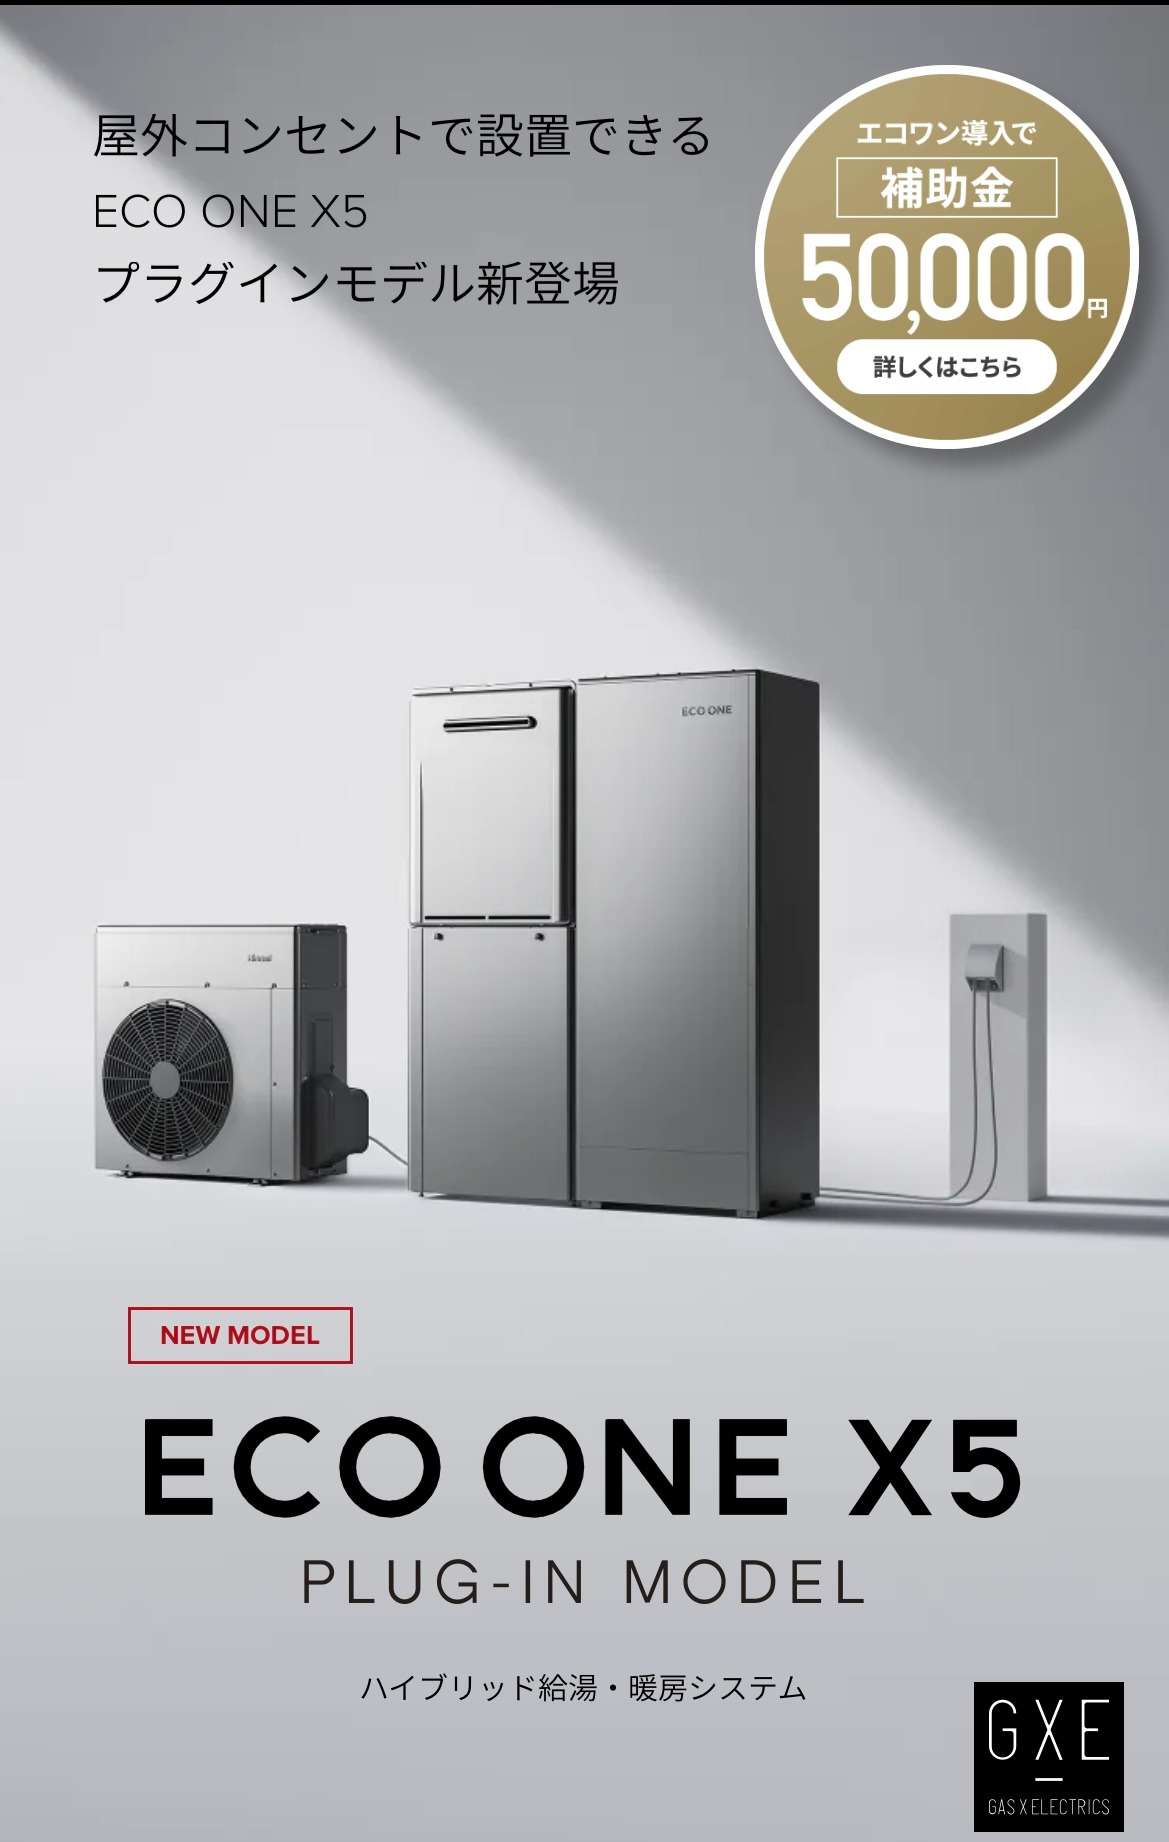 ９/８発売開始　ECO ONE X5 プラグインモデルWebサイト公開